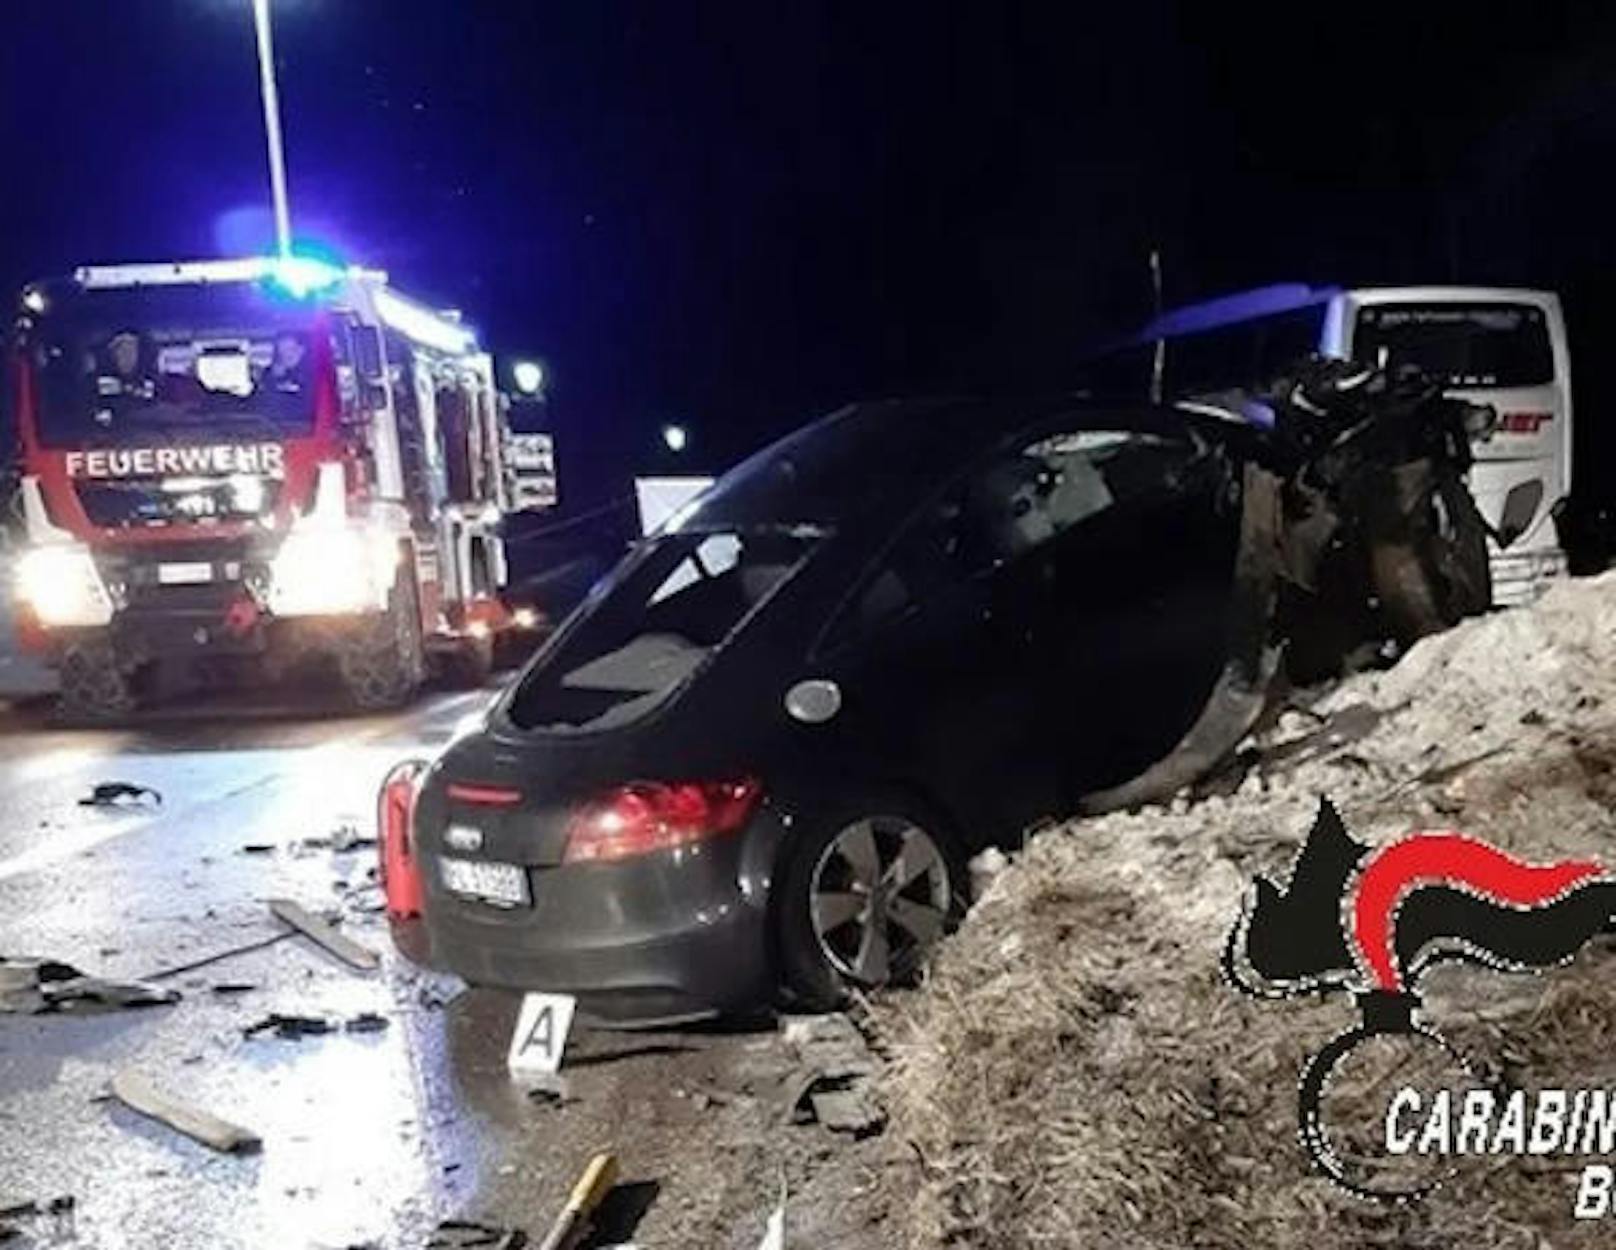 Die italienischen Carabinieri haben erstmals Fotos des Unfallautos veröffentlicht.